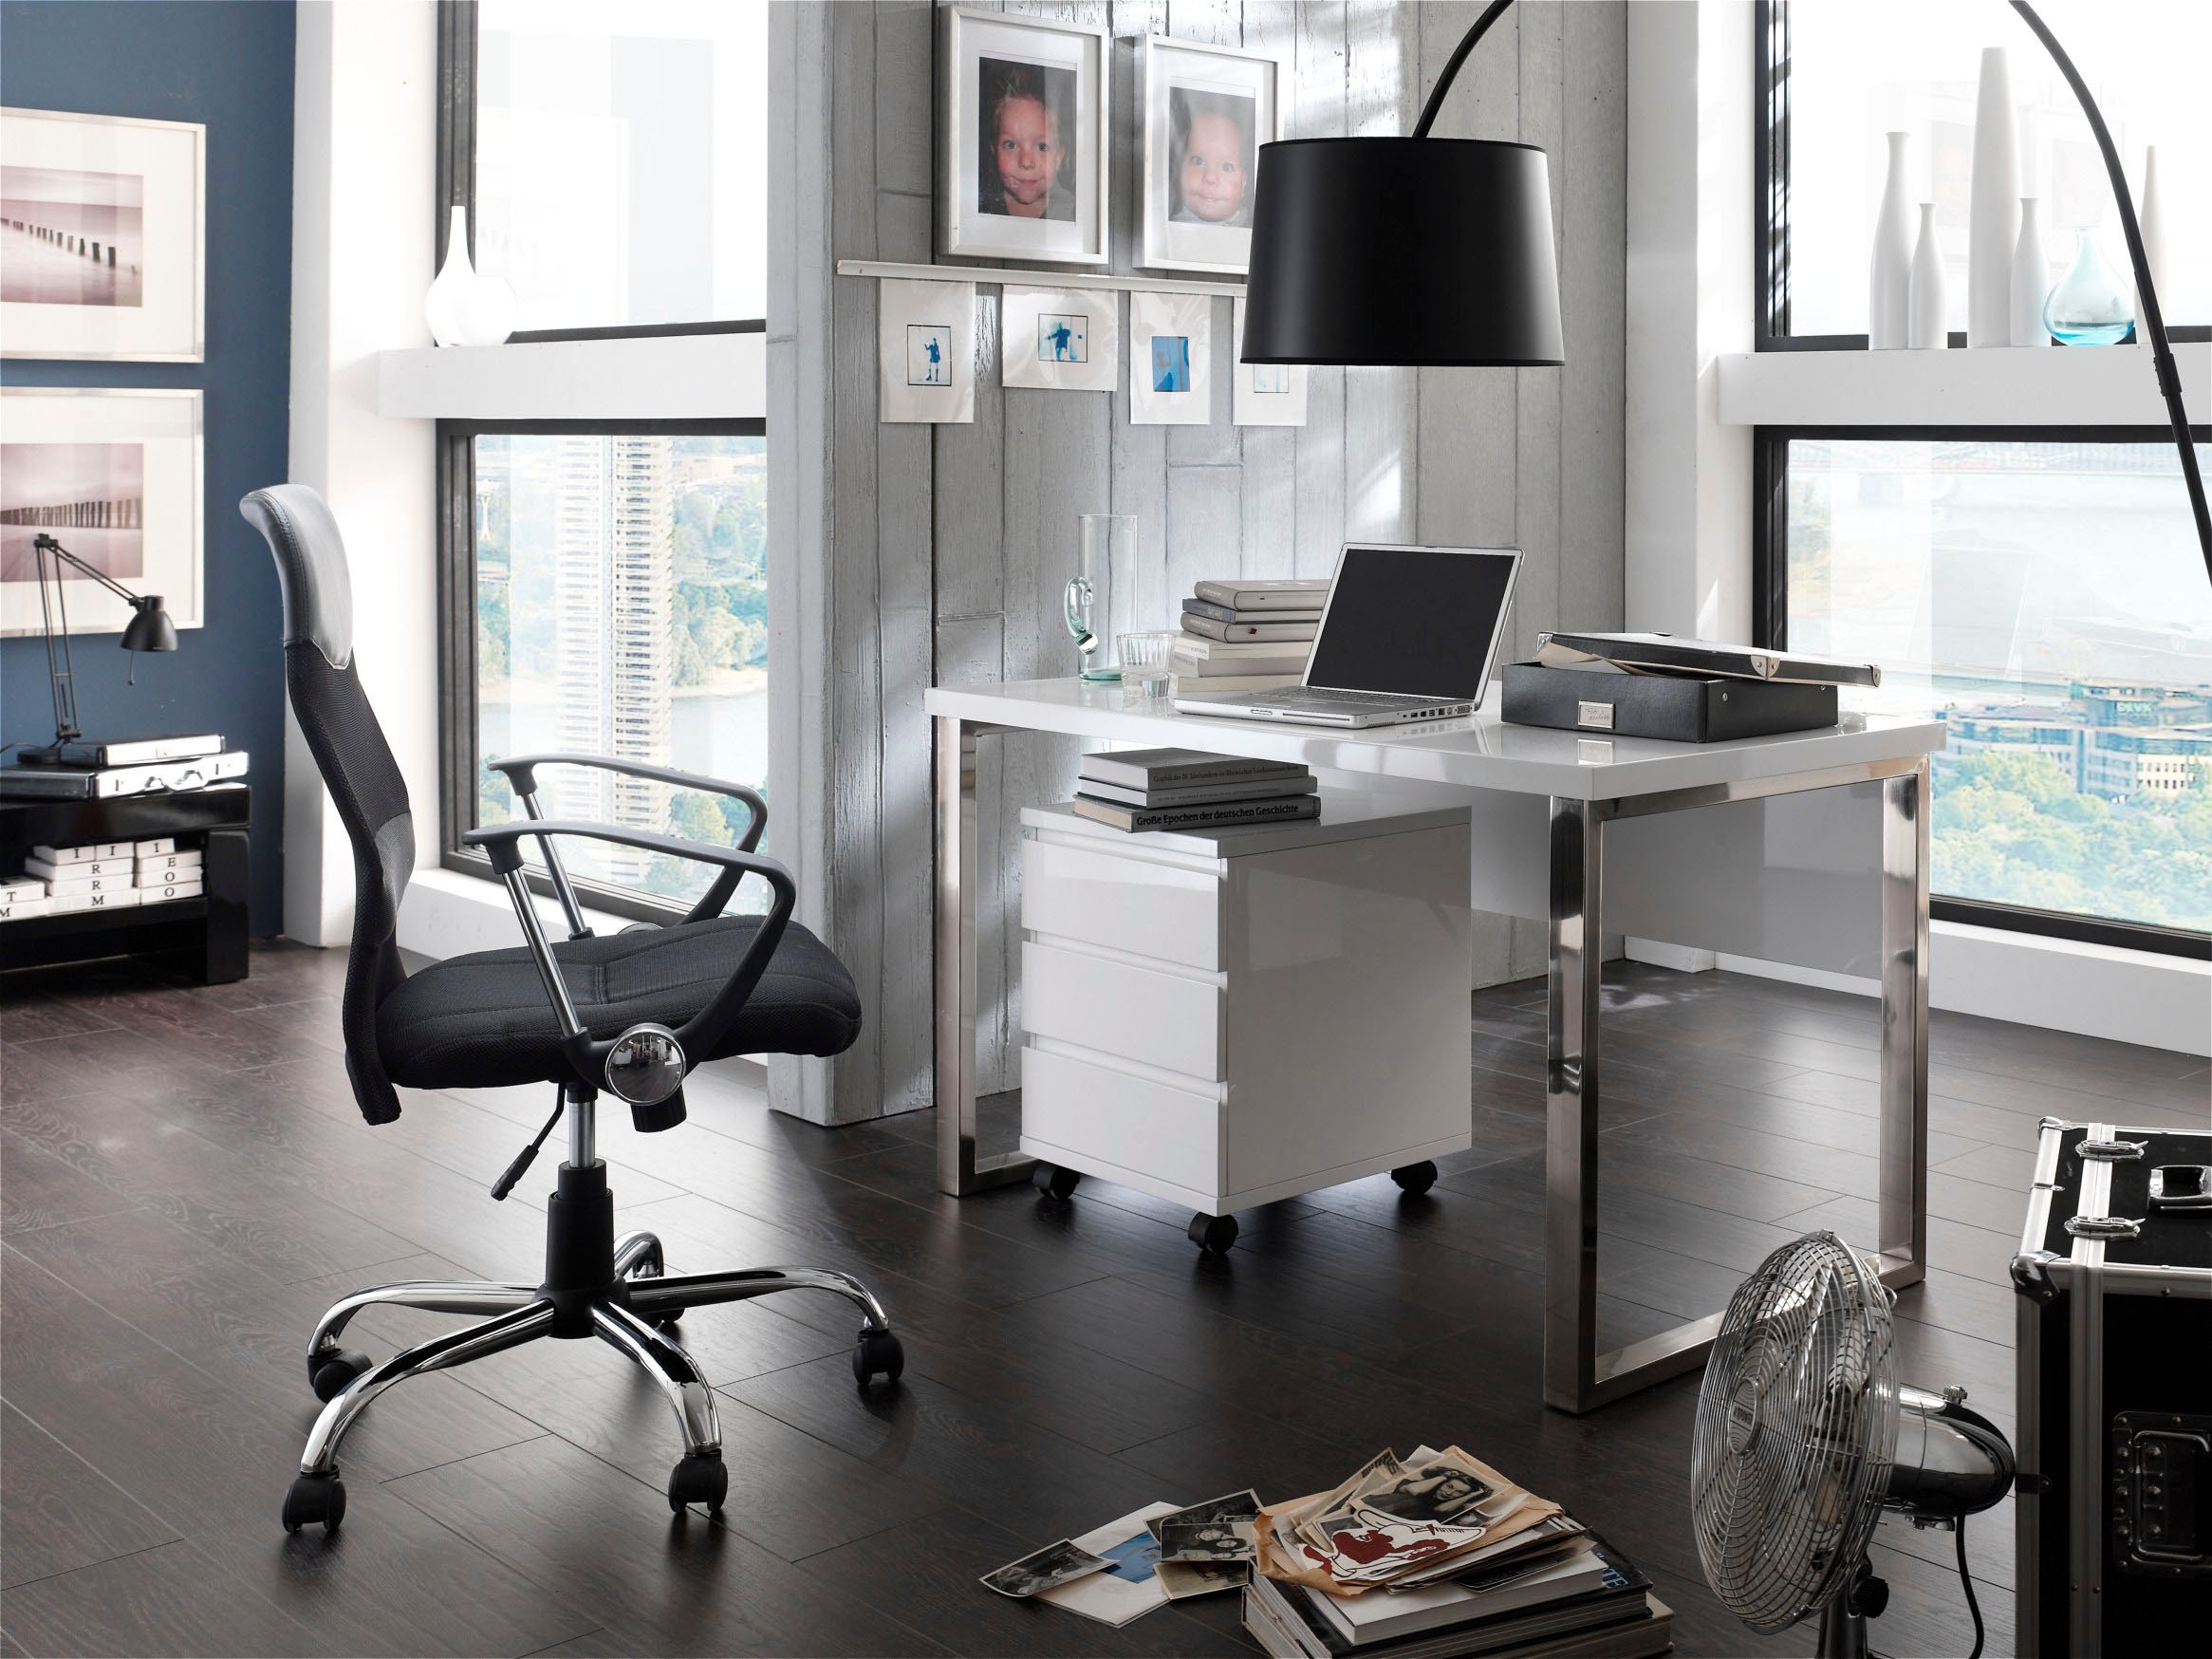 MCA furniture Schreibtisch »Sydney«, weiß Hochglanz, Breite 140 cm